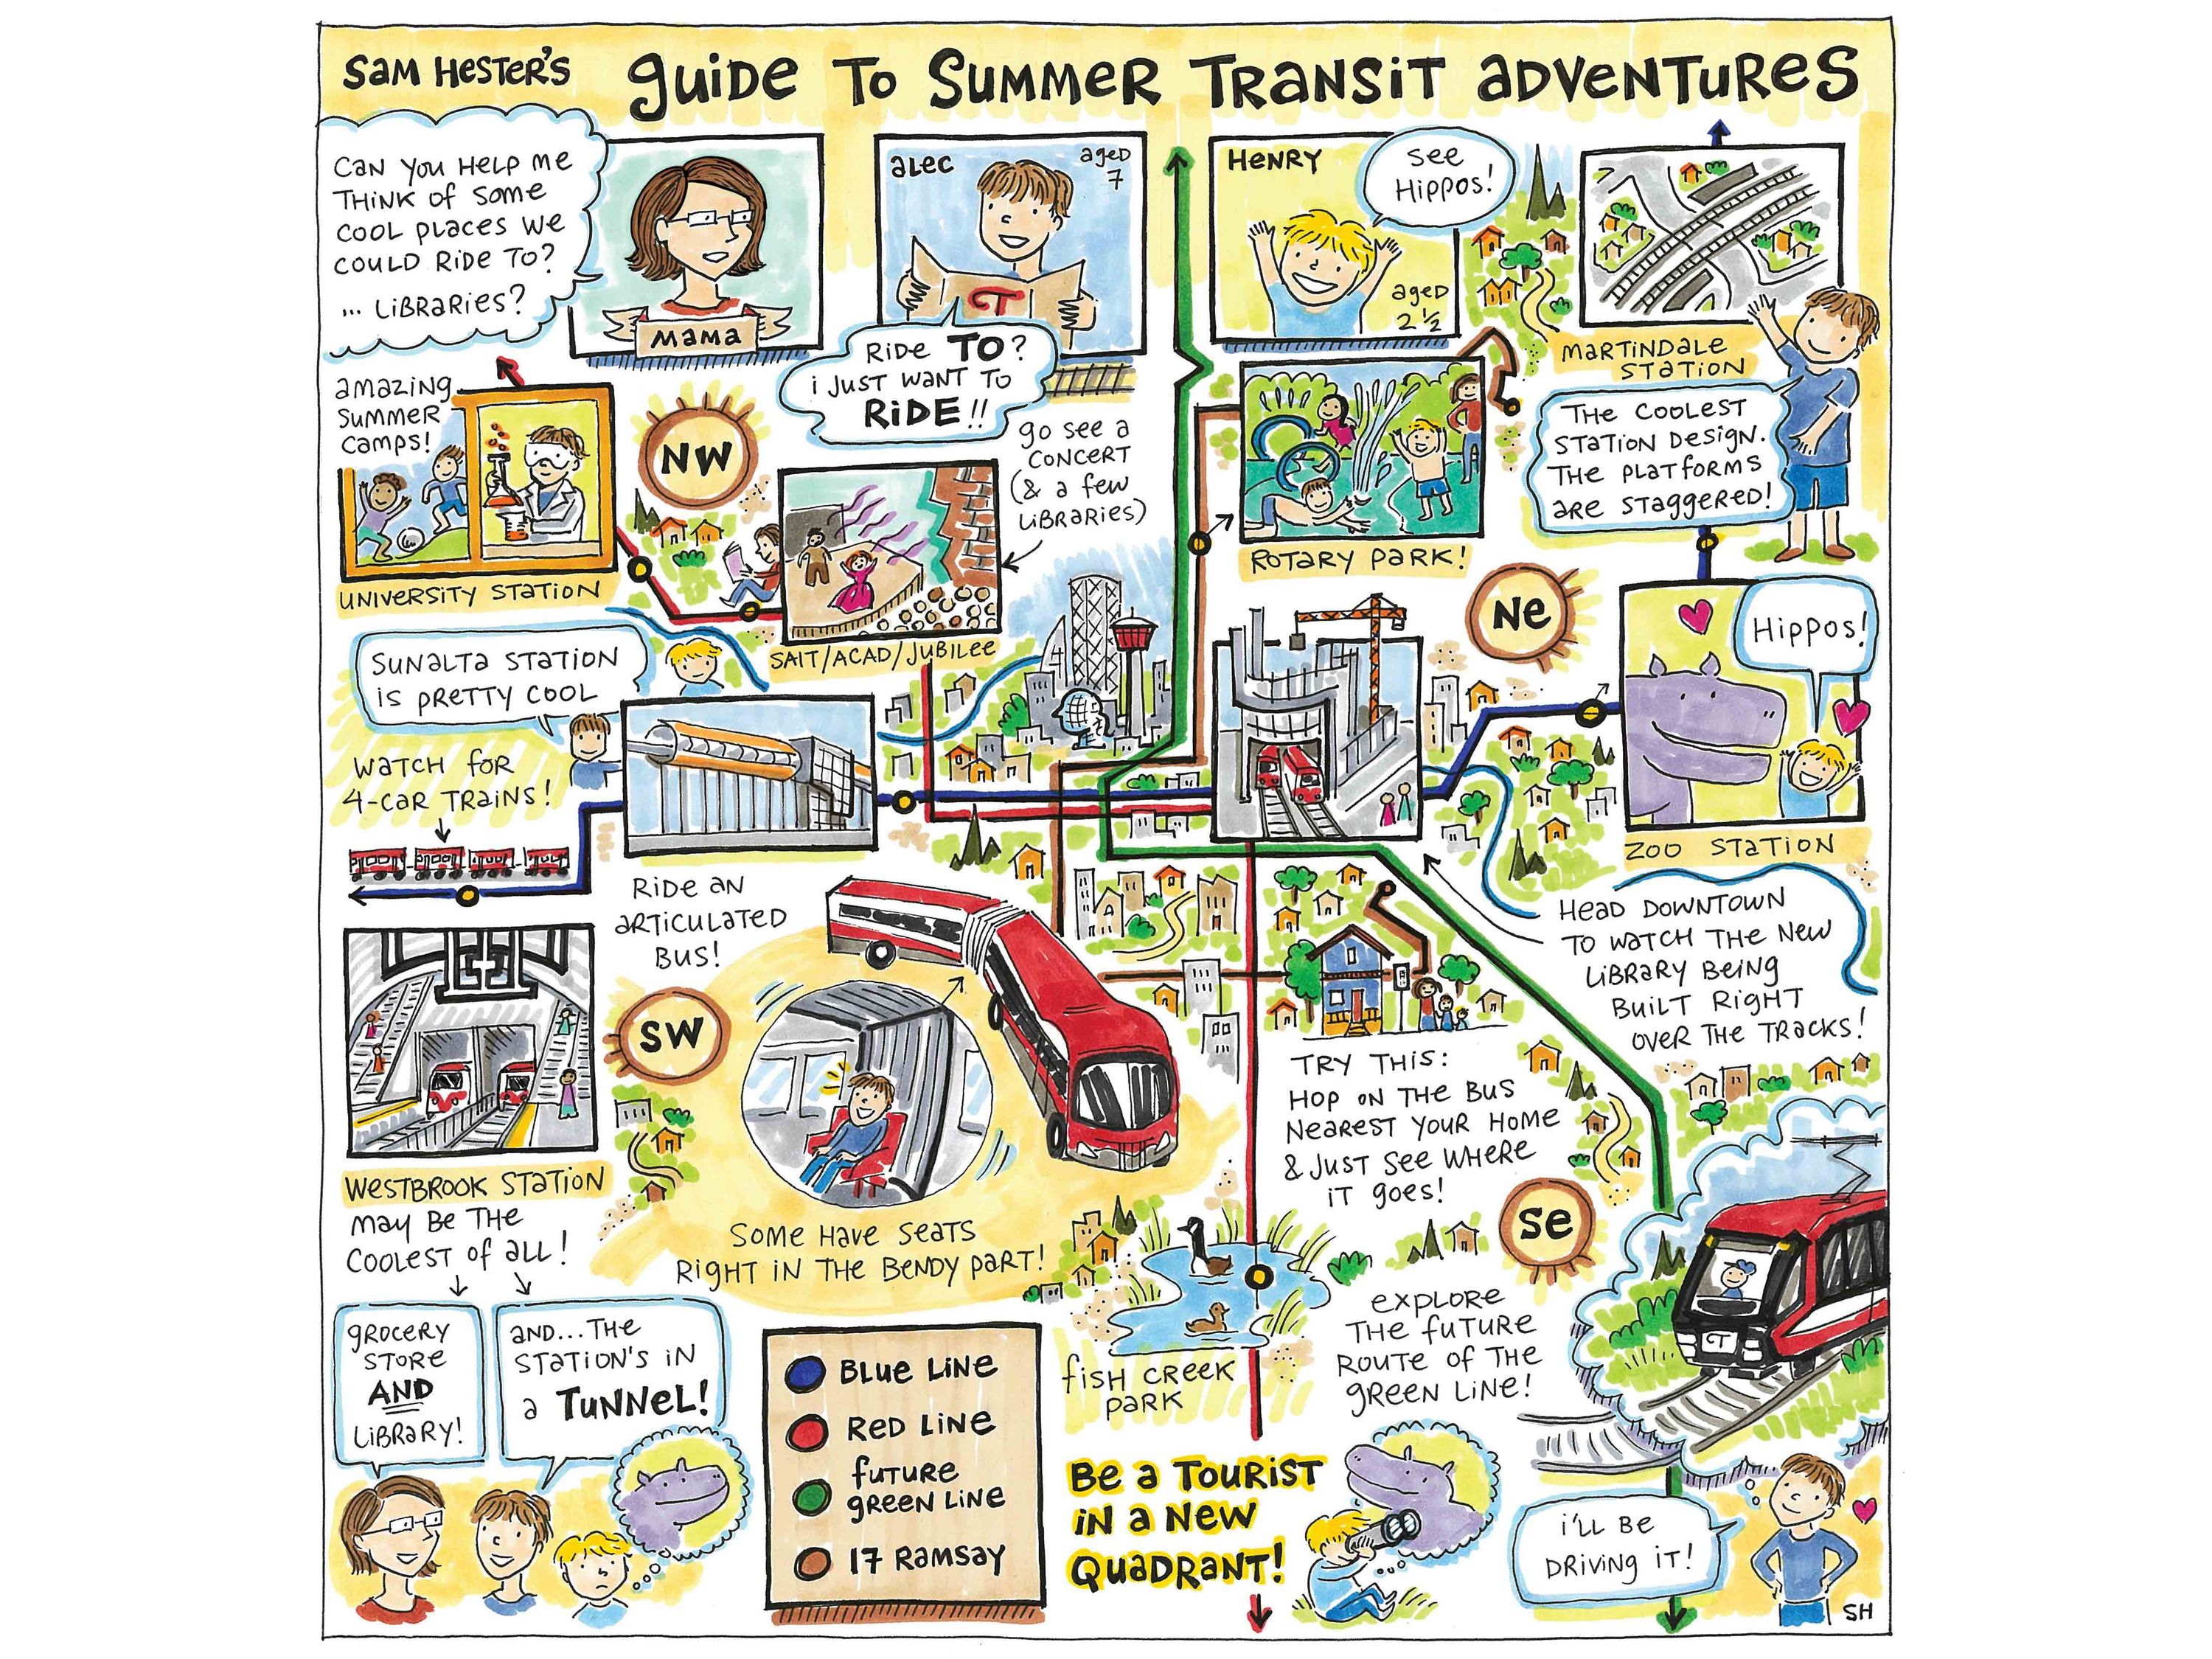 Sam Hester Sam_Guide-to-Summer-Transit-Adventures-Scan